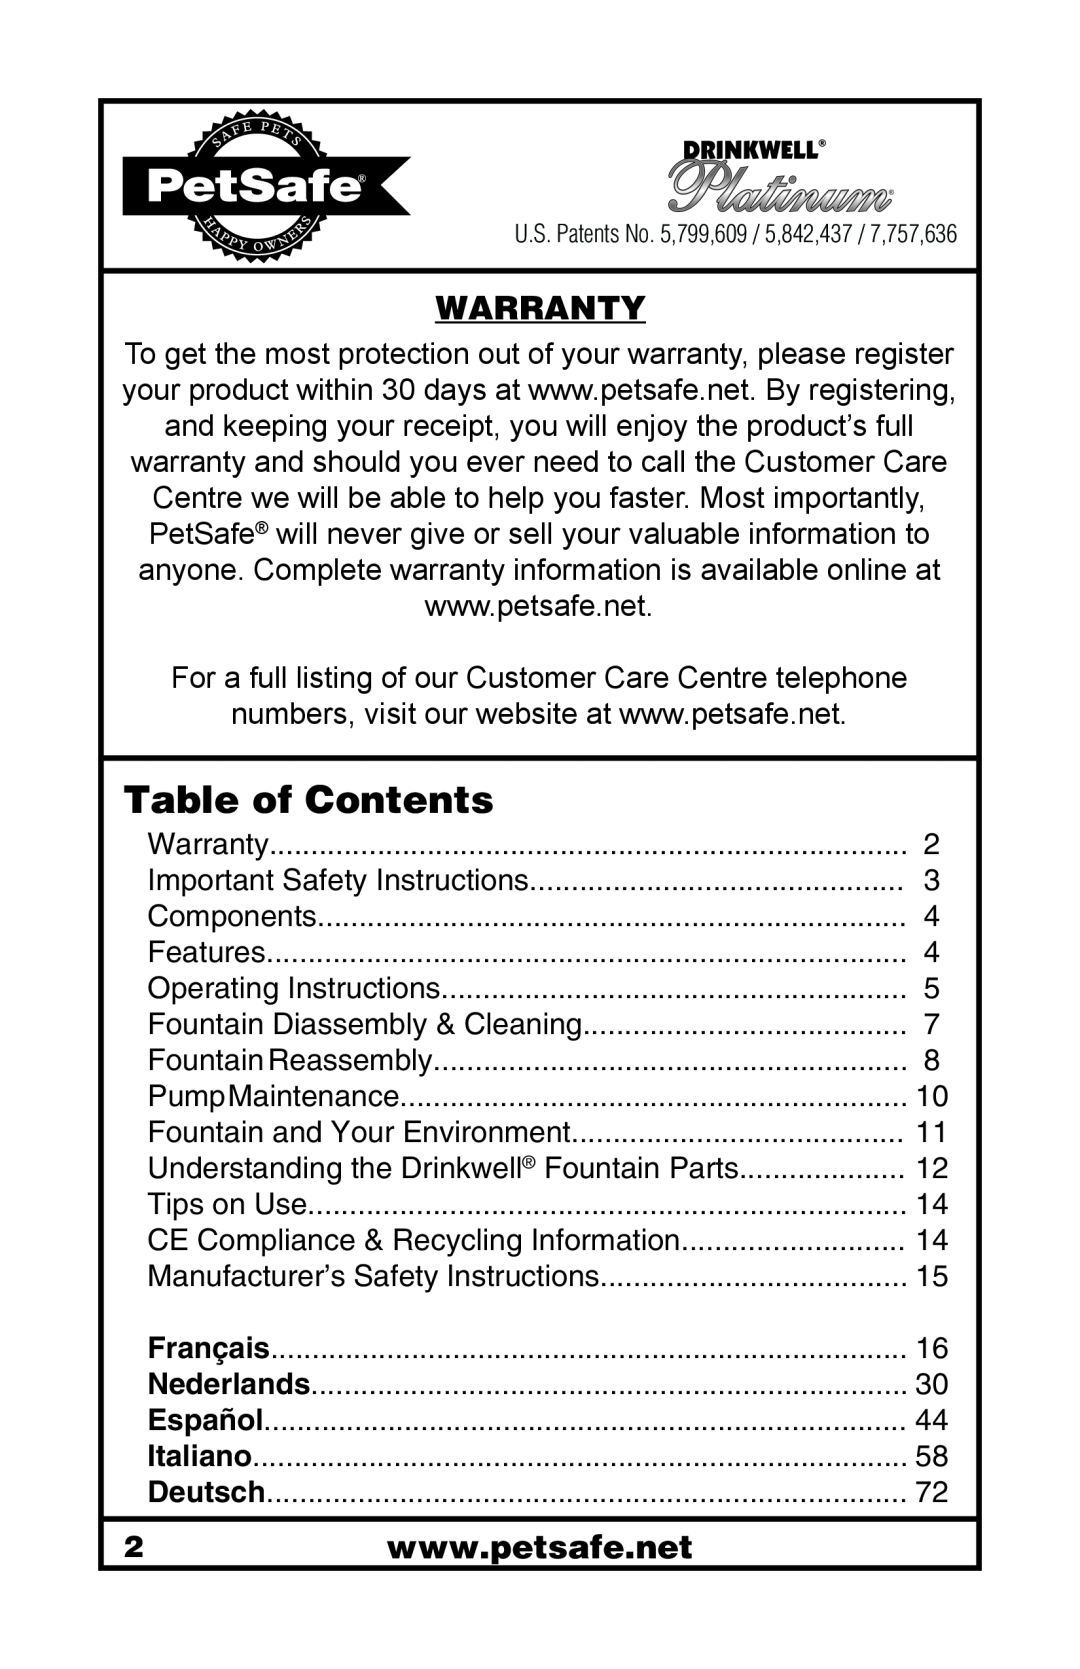 Petsafe 400-1255-19 manuel dutilisation Table of Contents, Warranty 